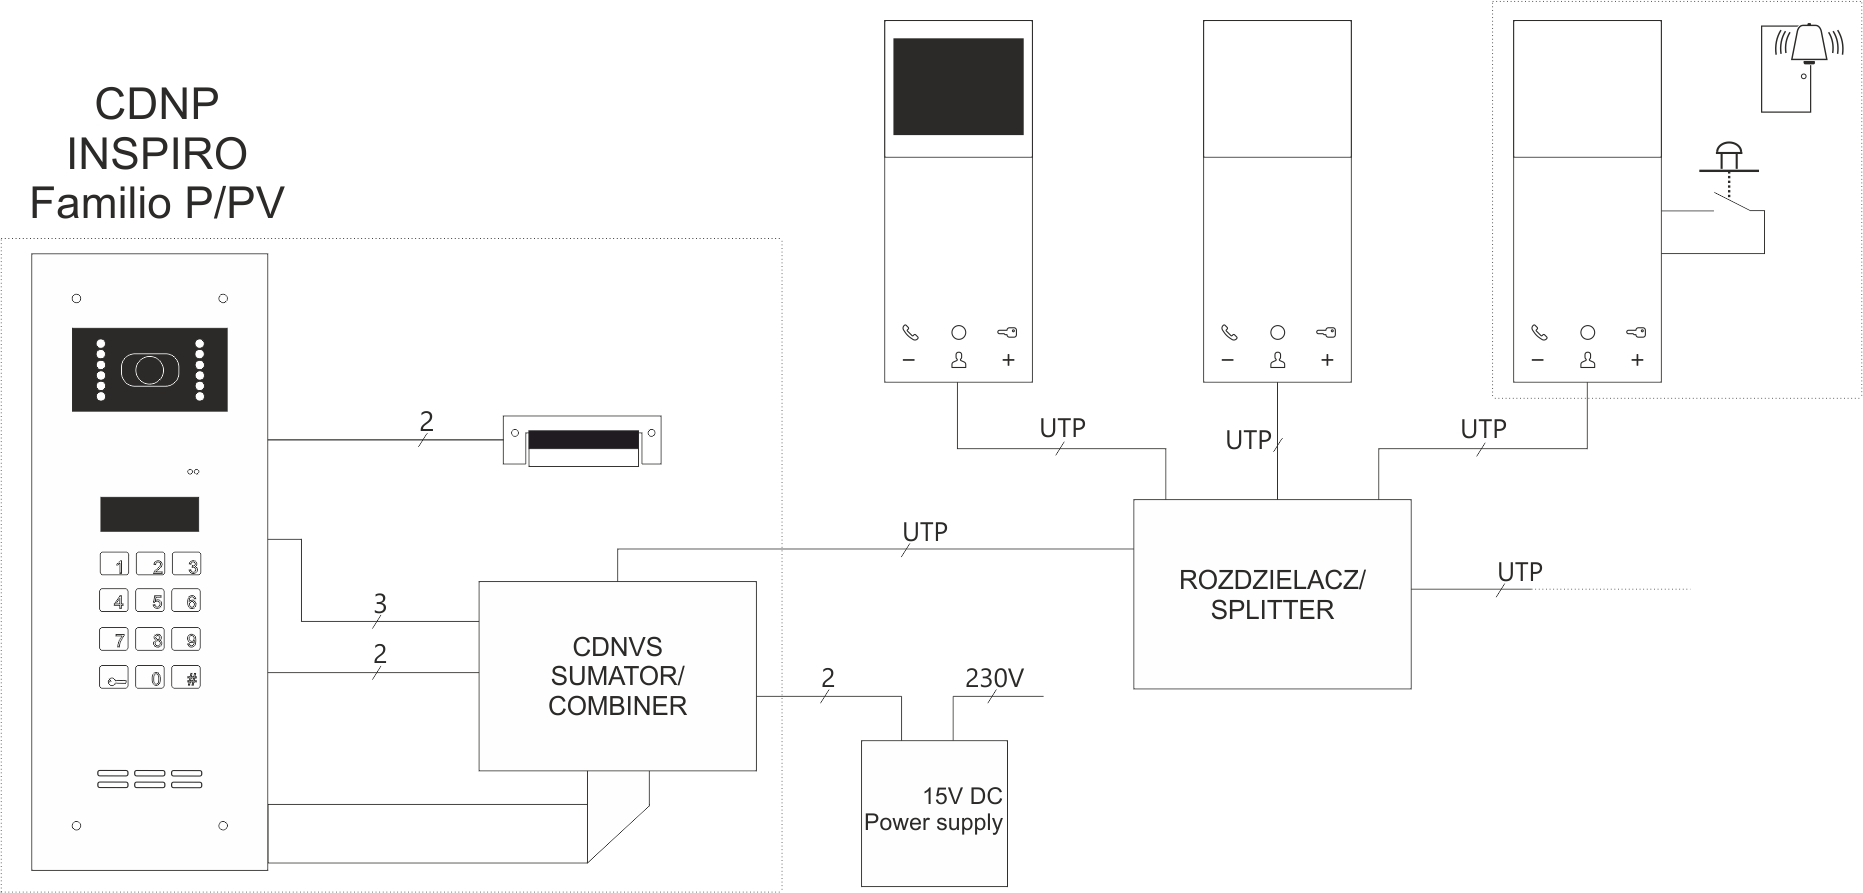 UP800V Unifon cyfrowy głośnomówiący z możliwością rozbudowy o wyświetlacz LCD - Schemat